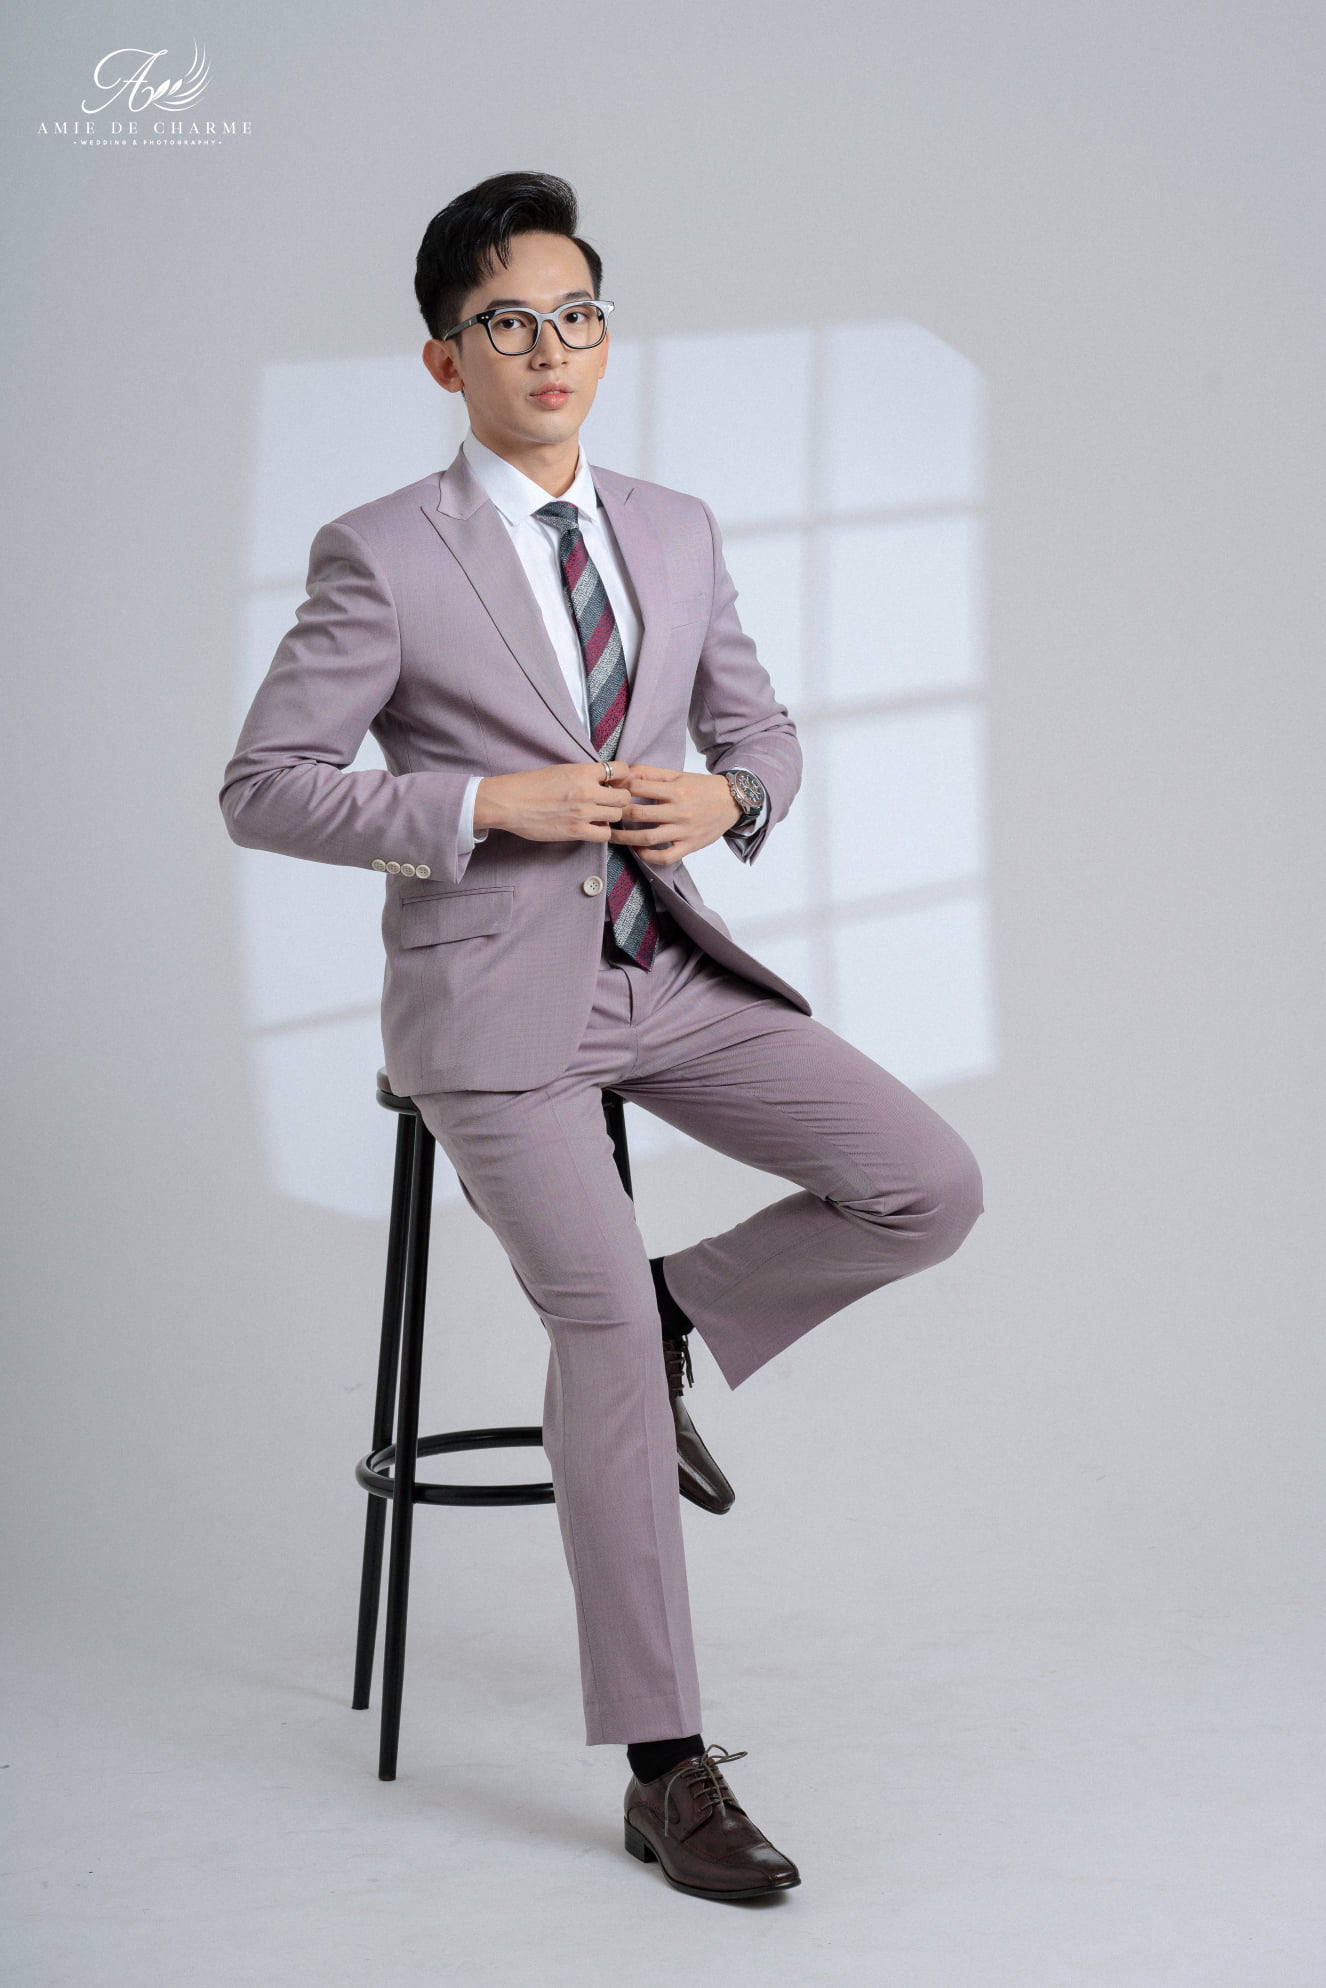 Suit màu tím pastel dành cho chàng trai trẻ trung và năng động